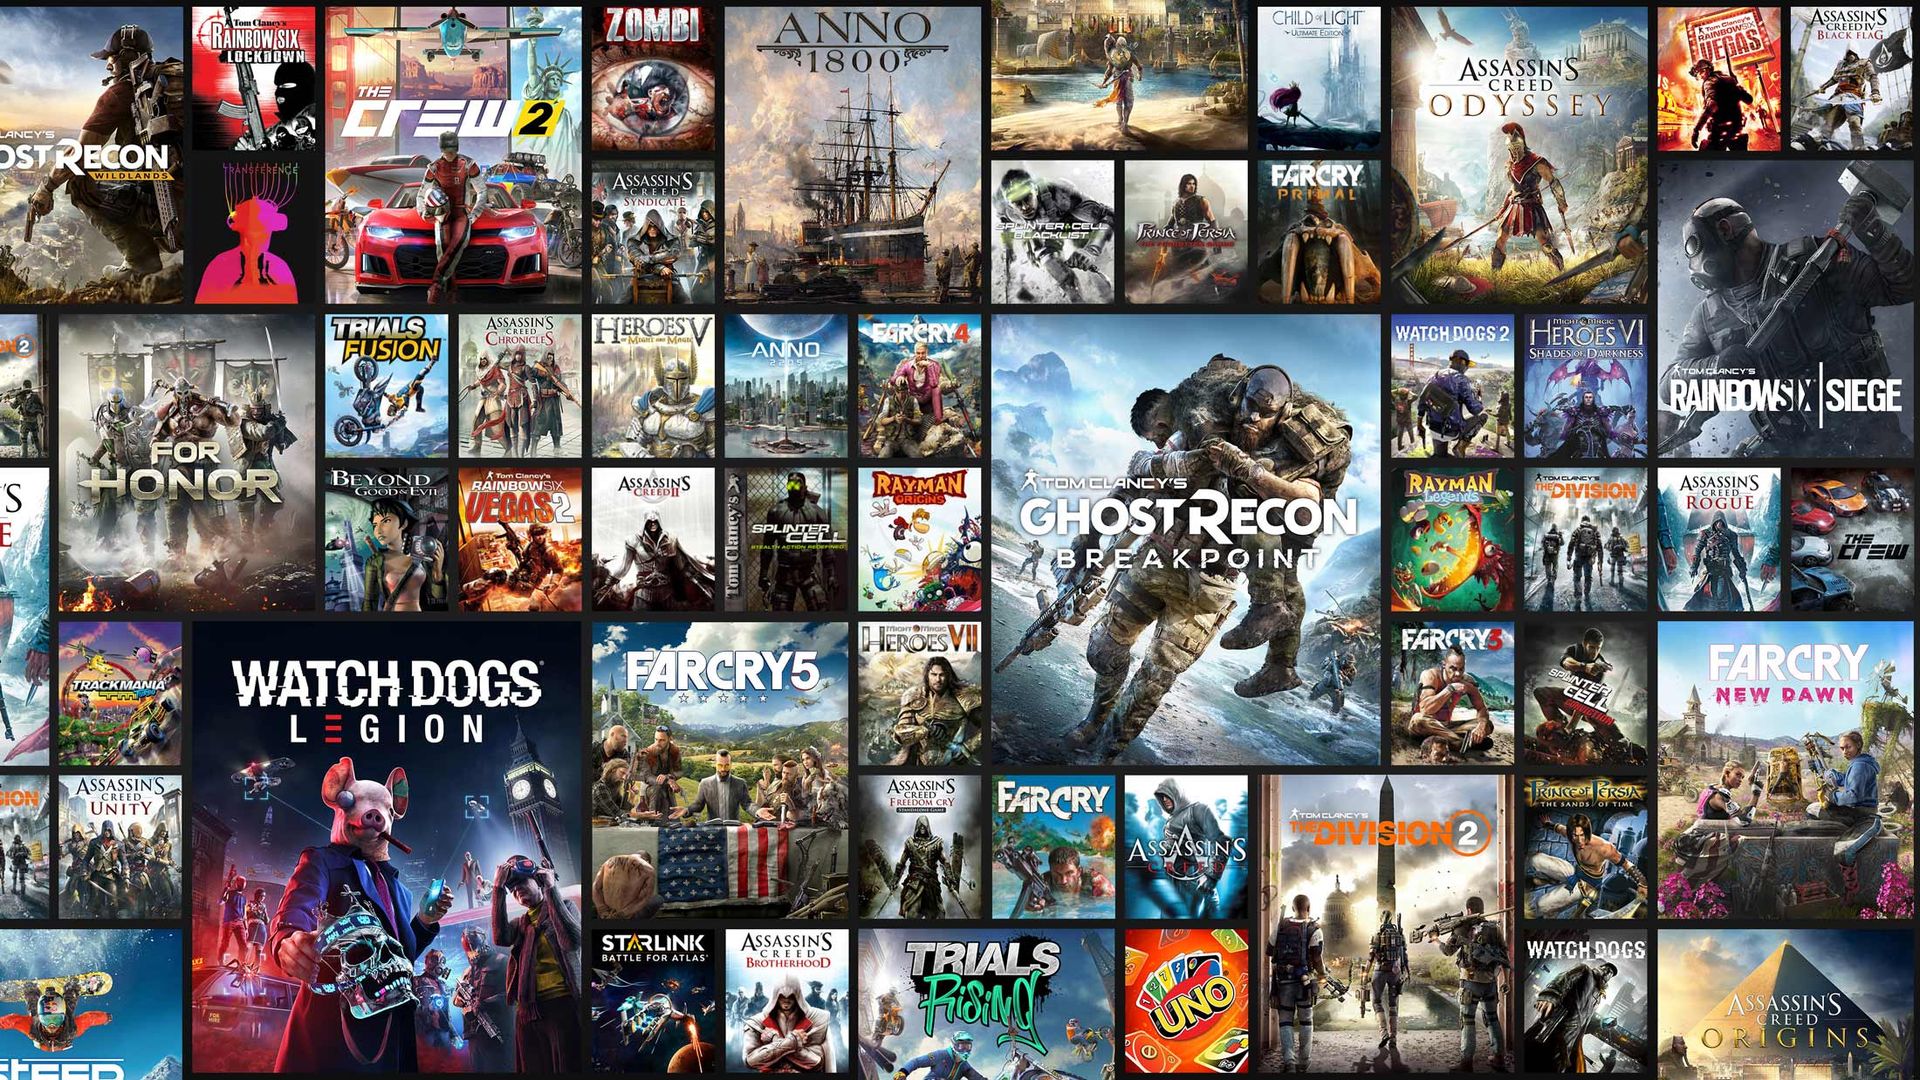 育碧无比自豪 旗下11款本世代游戏销量超千万份